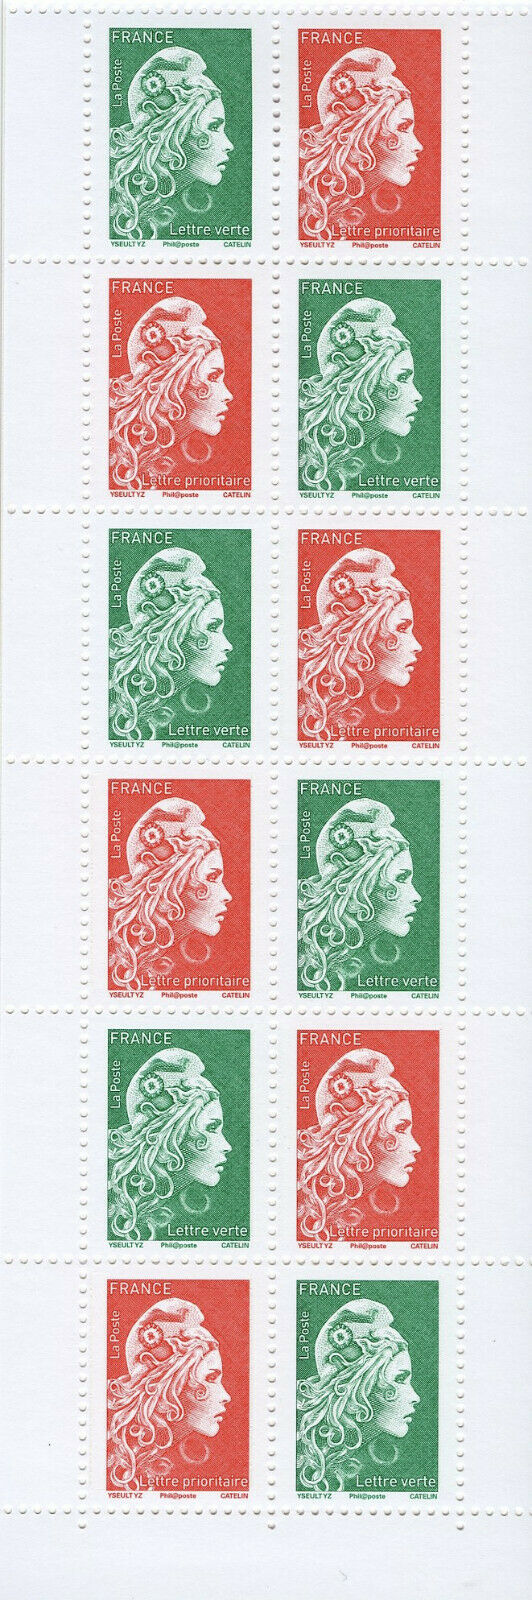 France 2018 MNH Marianne l'engagee Definitives 14v Booklet Stamps